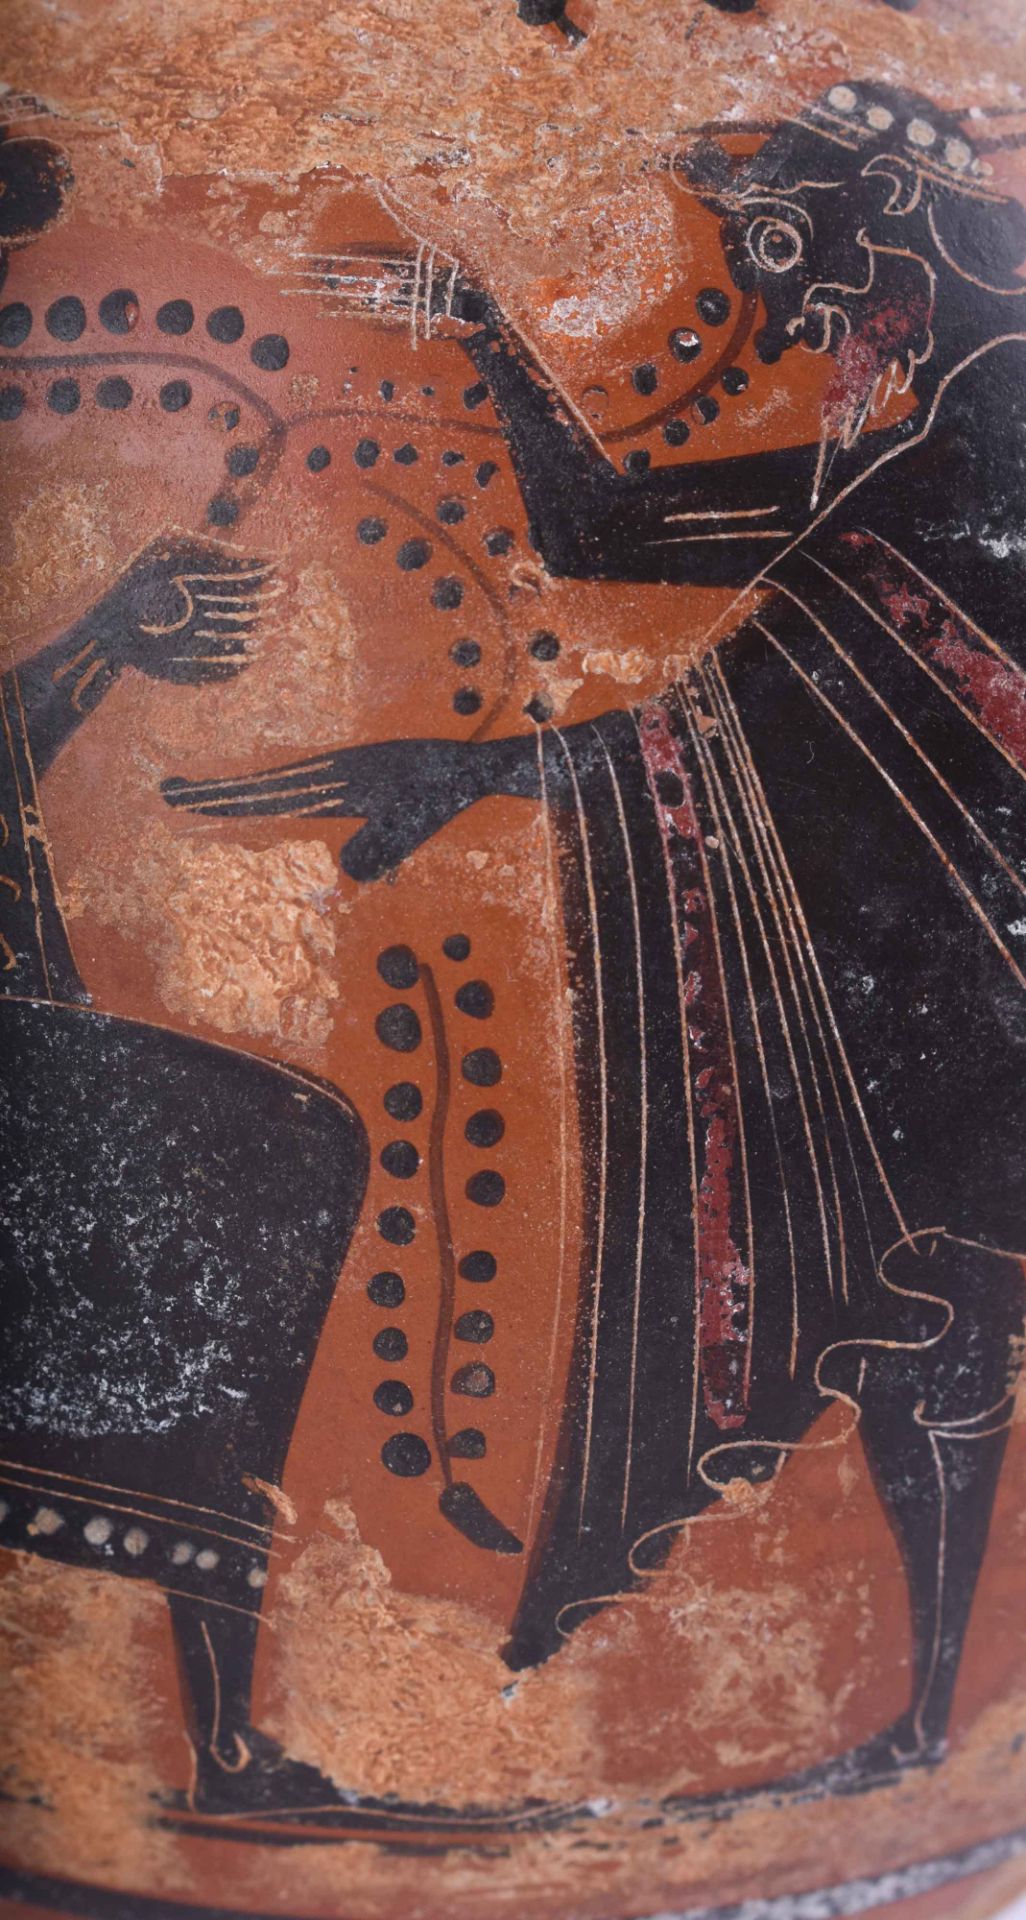 griechischer Henkelkrug wohl antik - spätantik  - Bild 5 aus 8